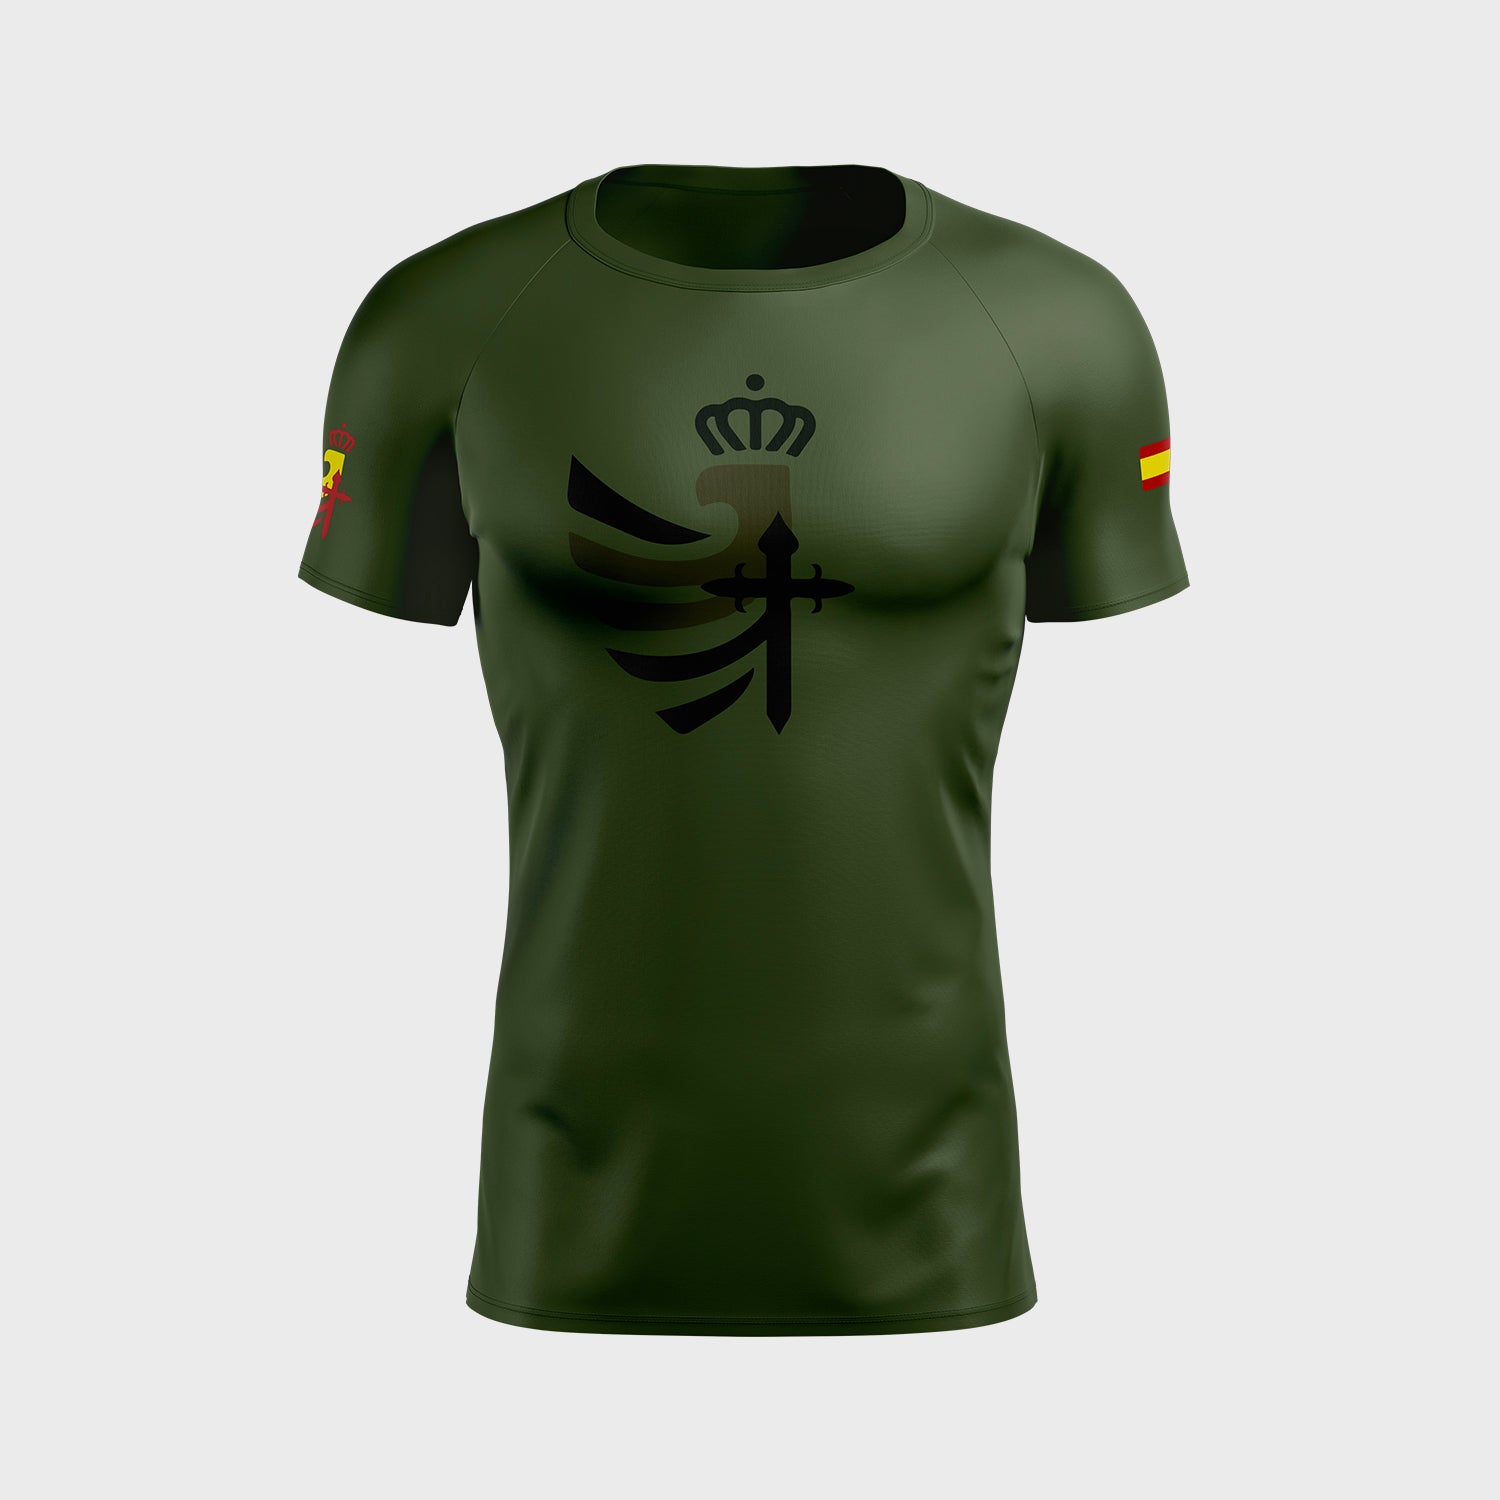 Camiseta Ejército de Tierra